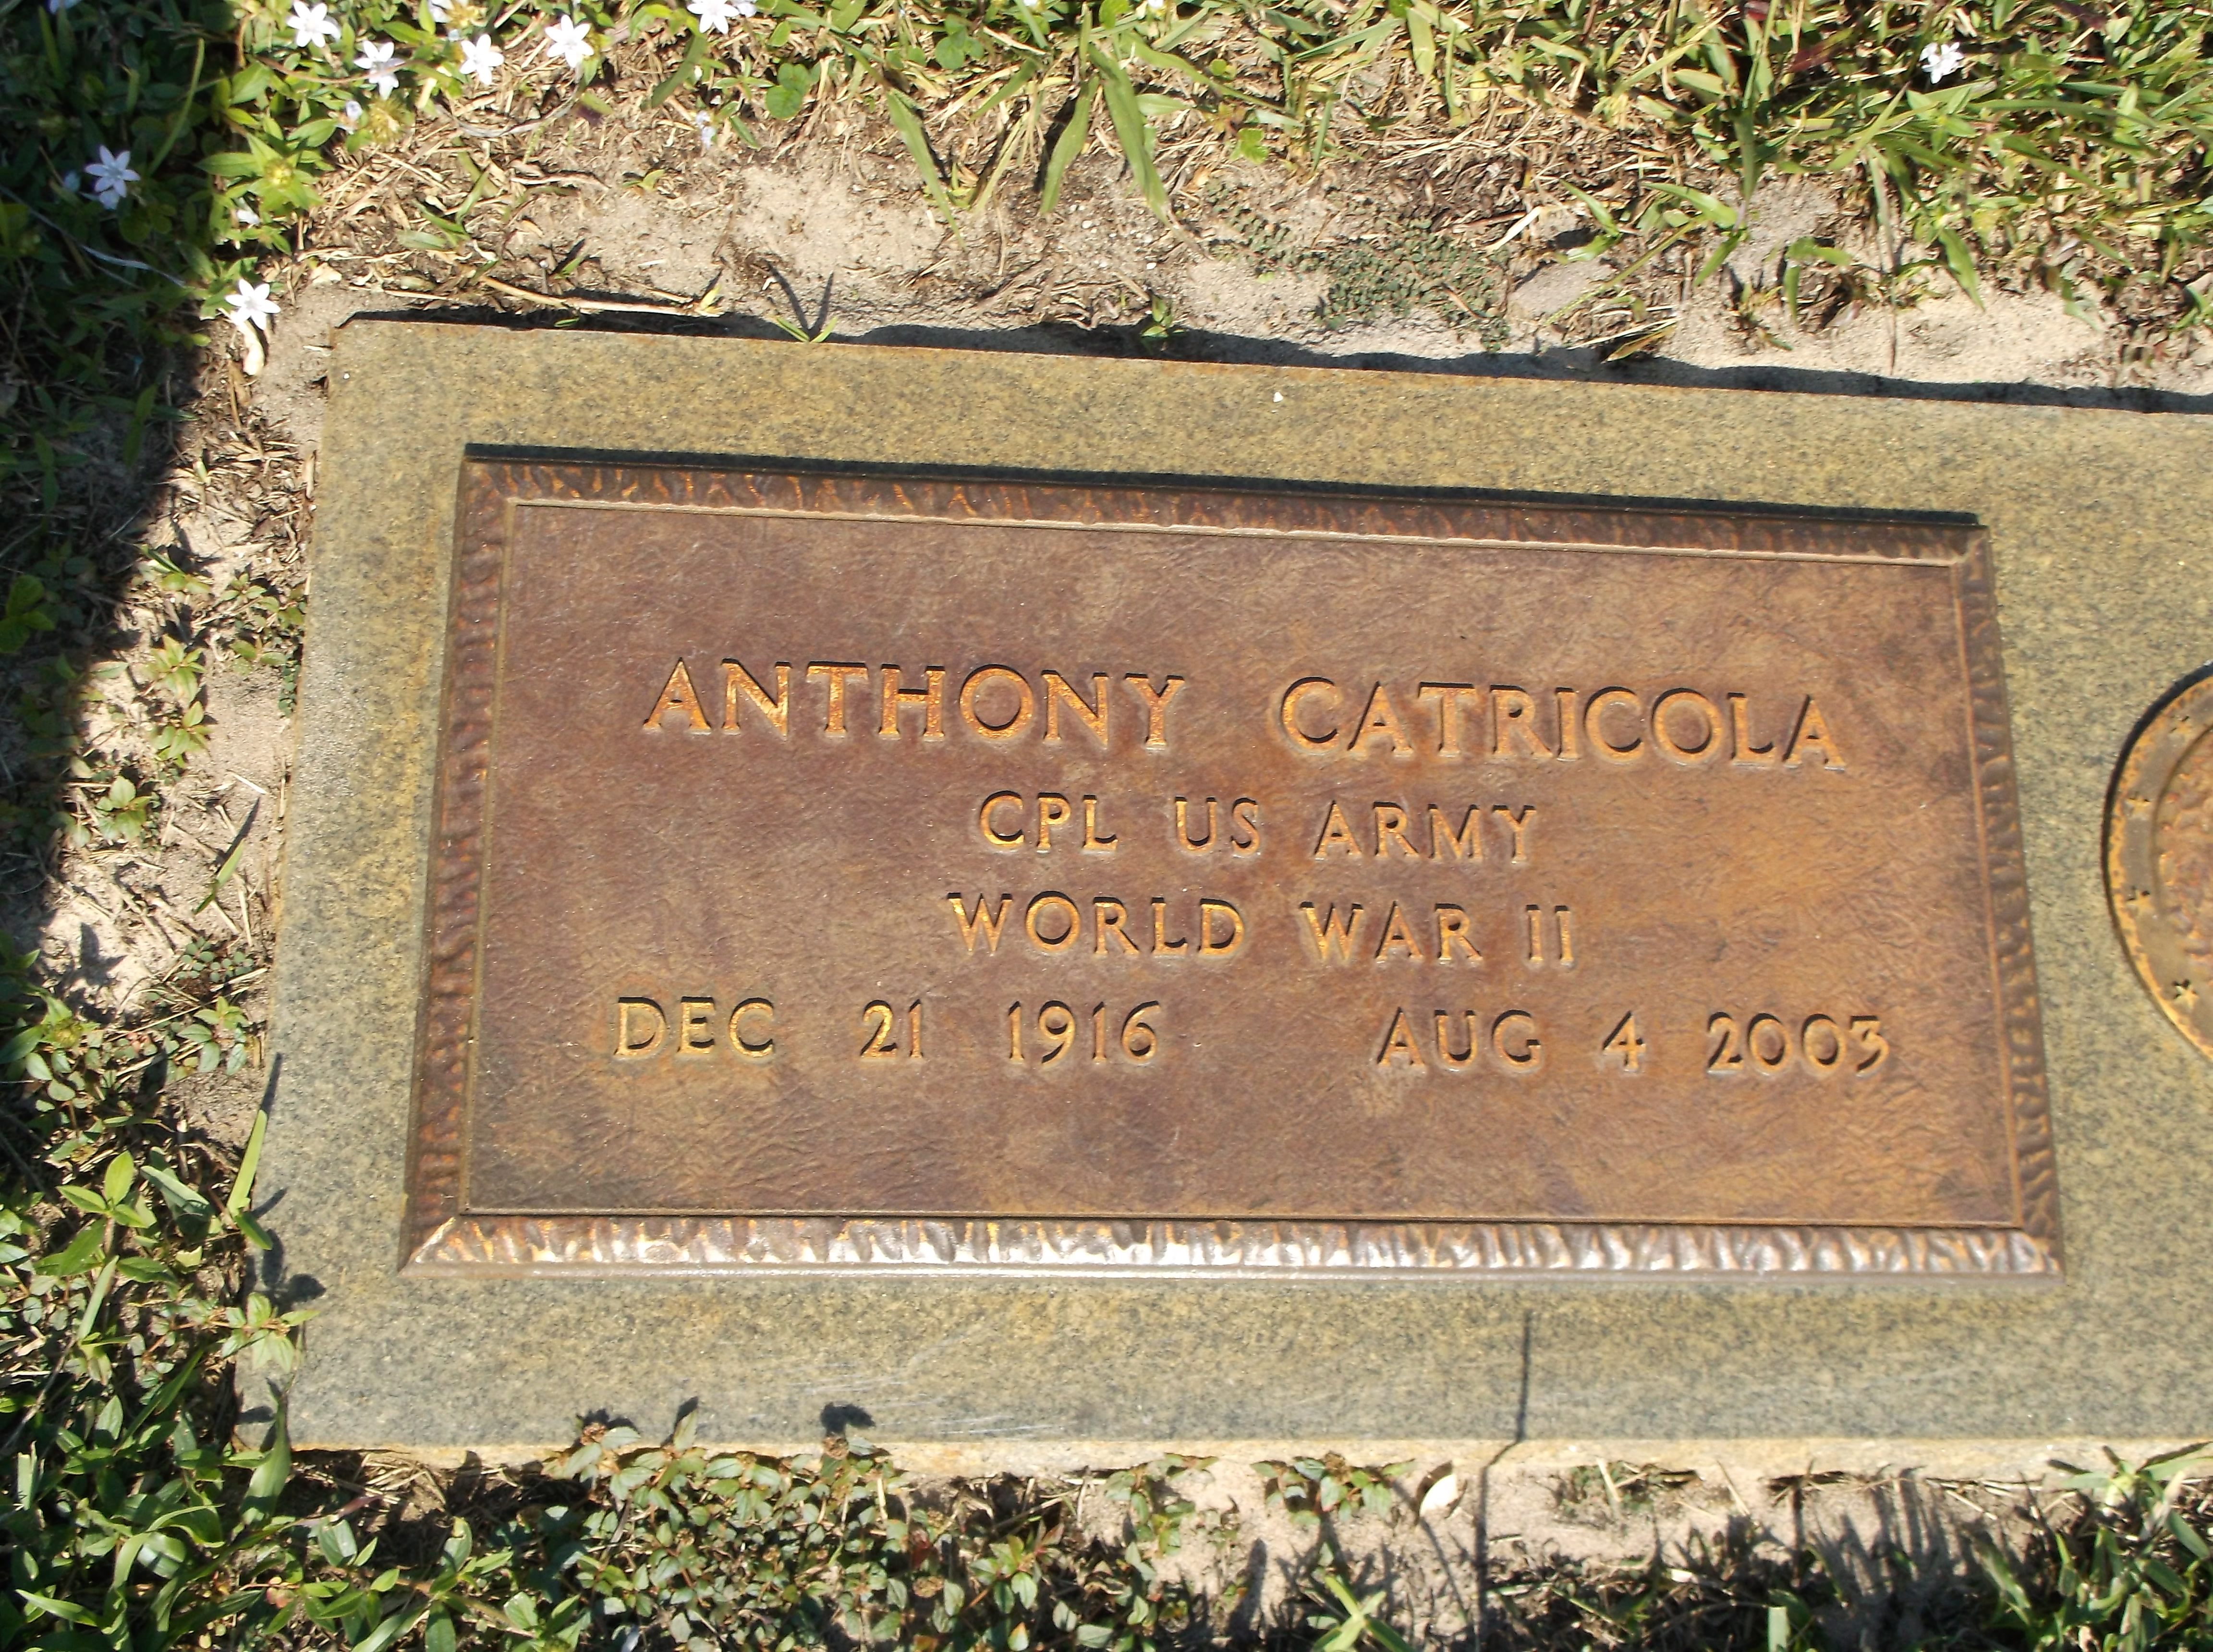 Anthony Catricola